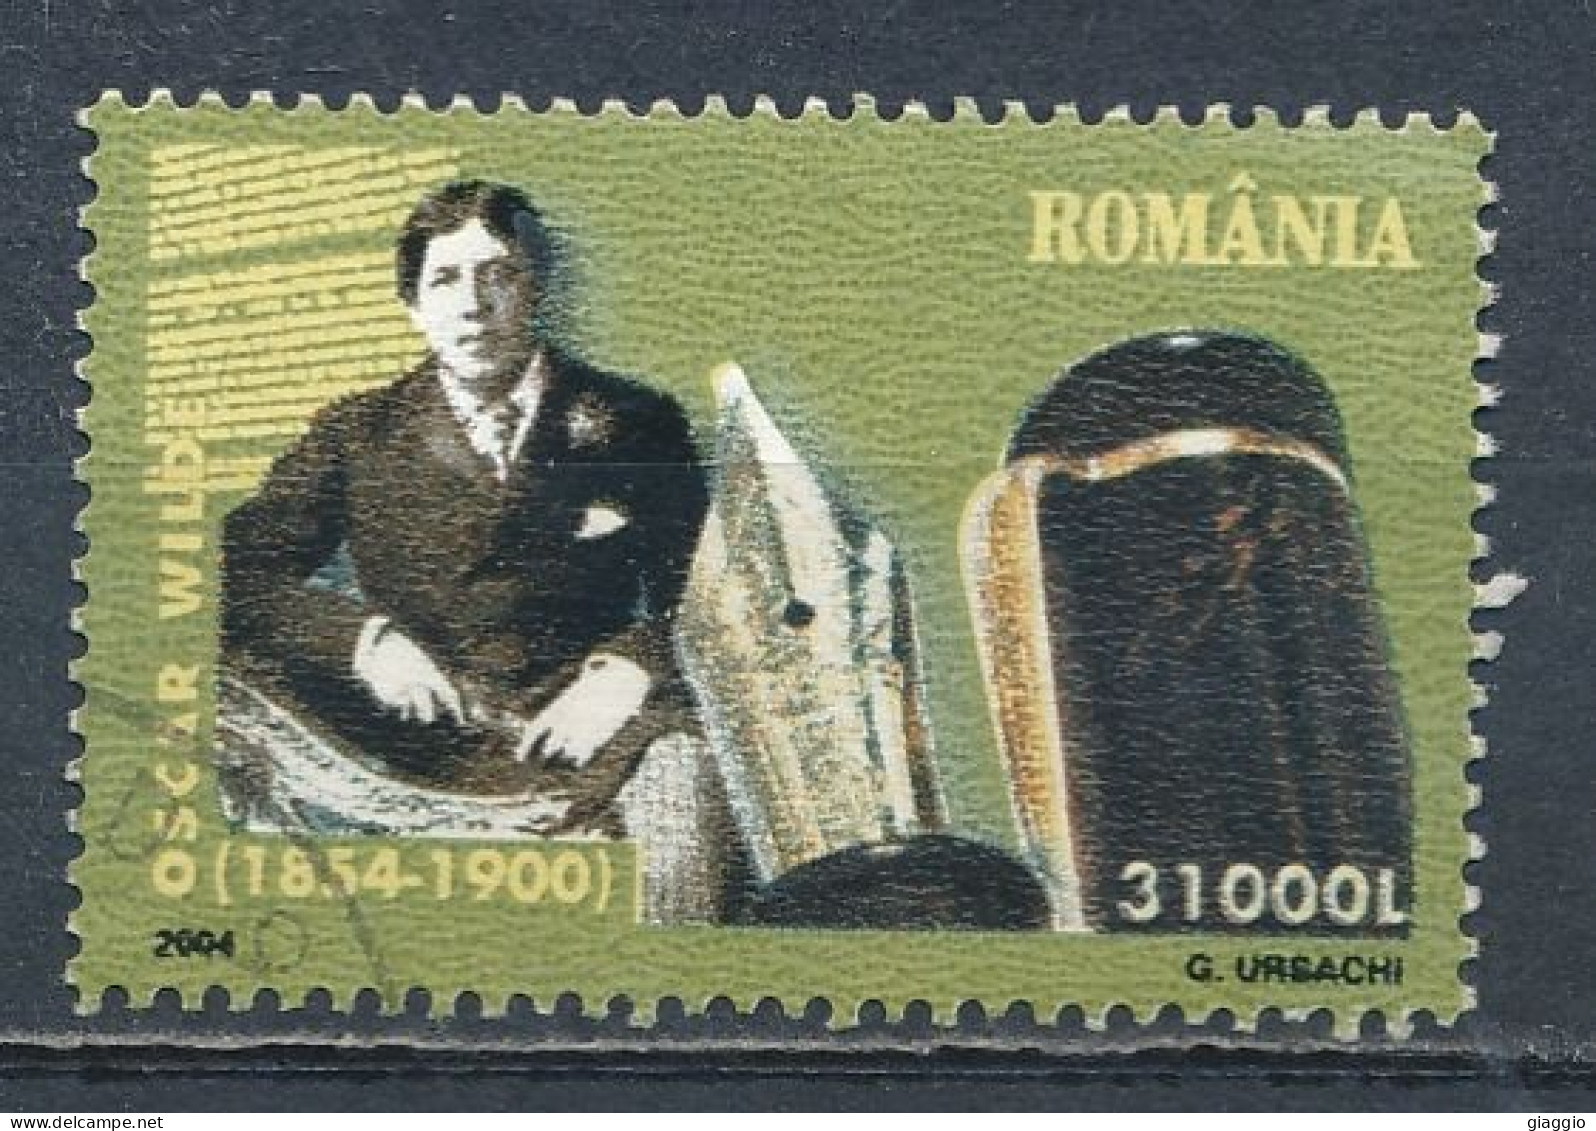 °°° ROMANIA - Y&T N° 4892 - 2004 °°° - Gebraucht